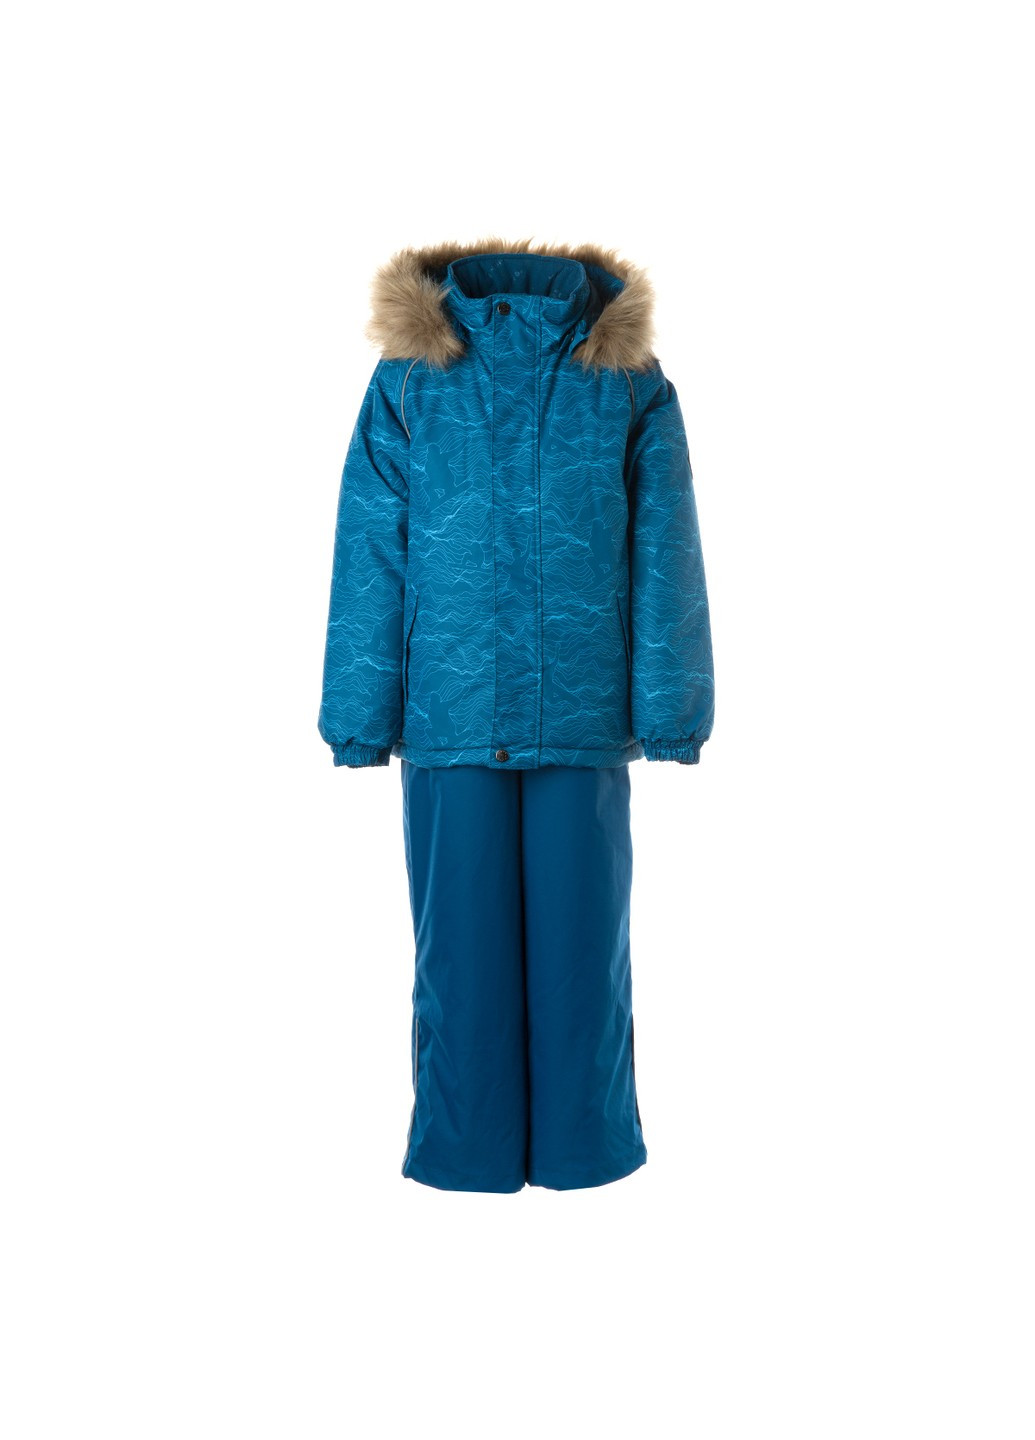 Бирюзовый зимний комплект зимний (куртка + полукомбинезон) winter Huppa